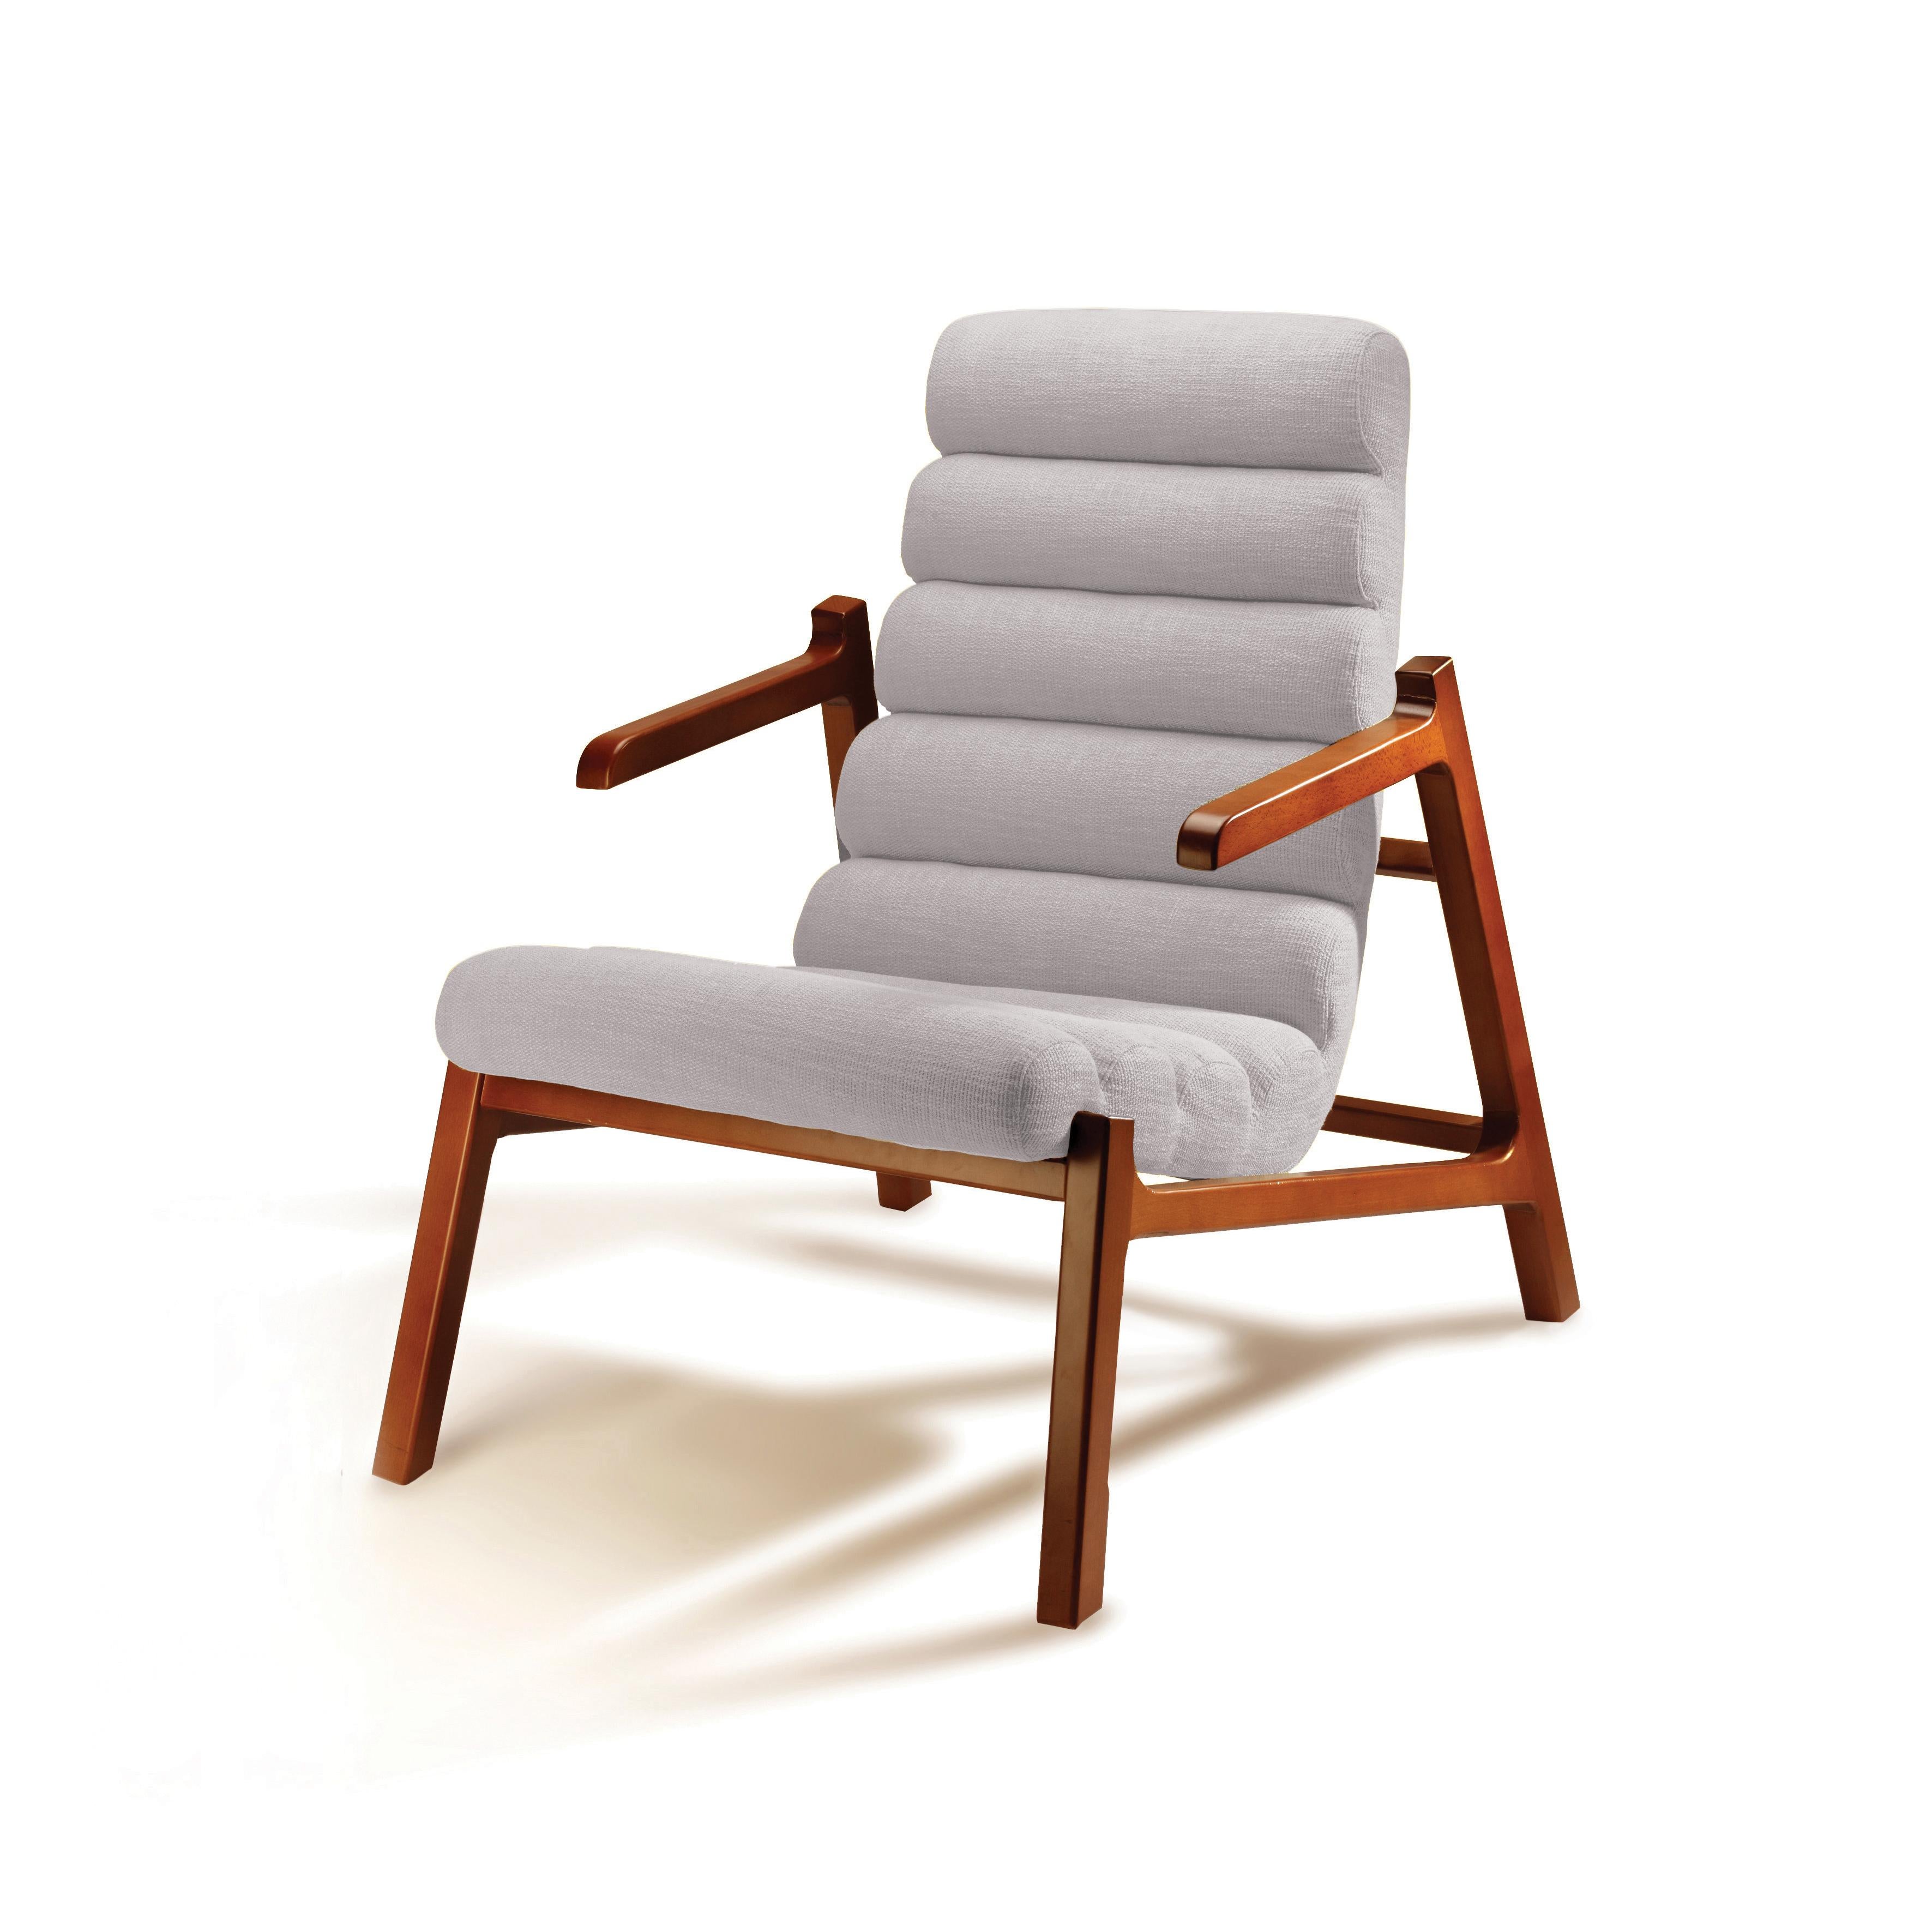 Die skulpturale Struktur von Easy macht diesen Sessel leicht und charmant. Die bequeme Polsterung mit ihren parallelen, runden Formen wirkt saftig und einladend und ruht schwebend auf der Buchenholzstruktur. Ein sehr einzigartiges Stück, elegant und